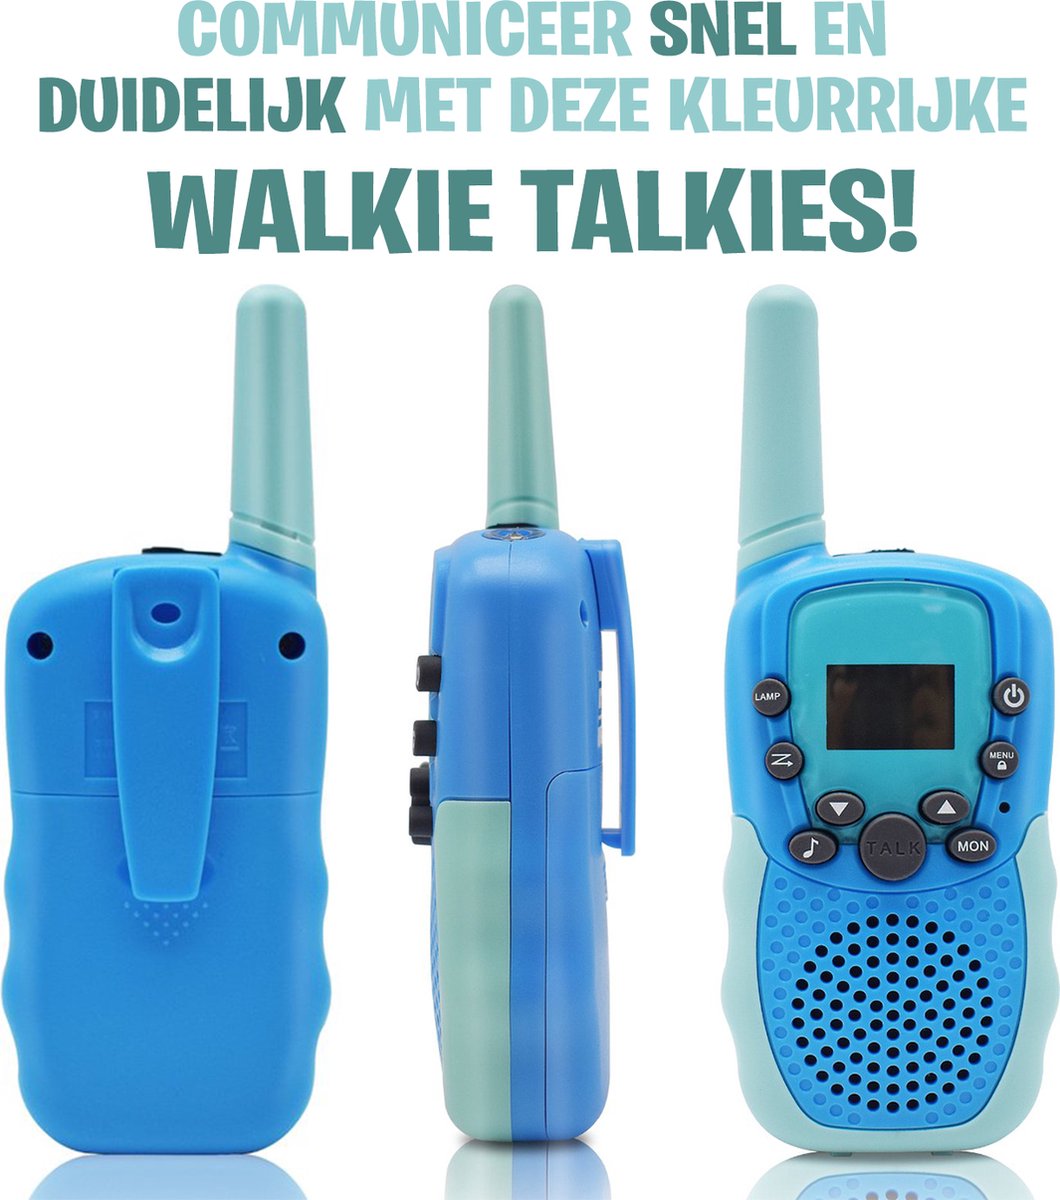 Talkie Walkie rechargeables BUKI - noir, Jouet